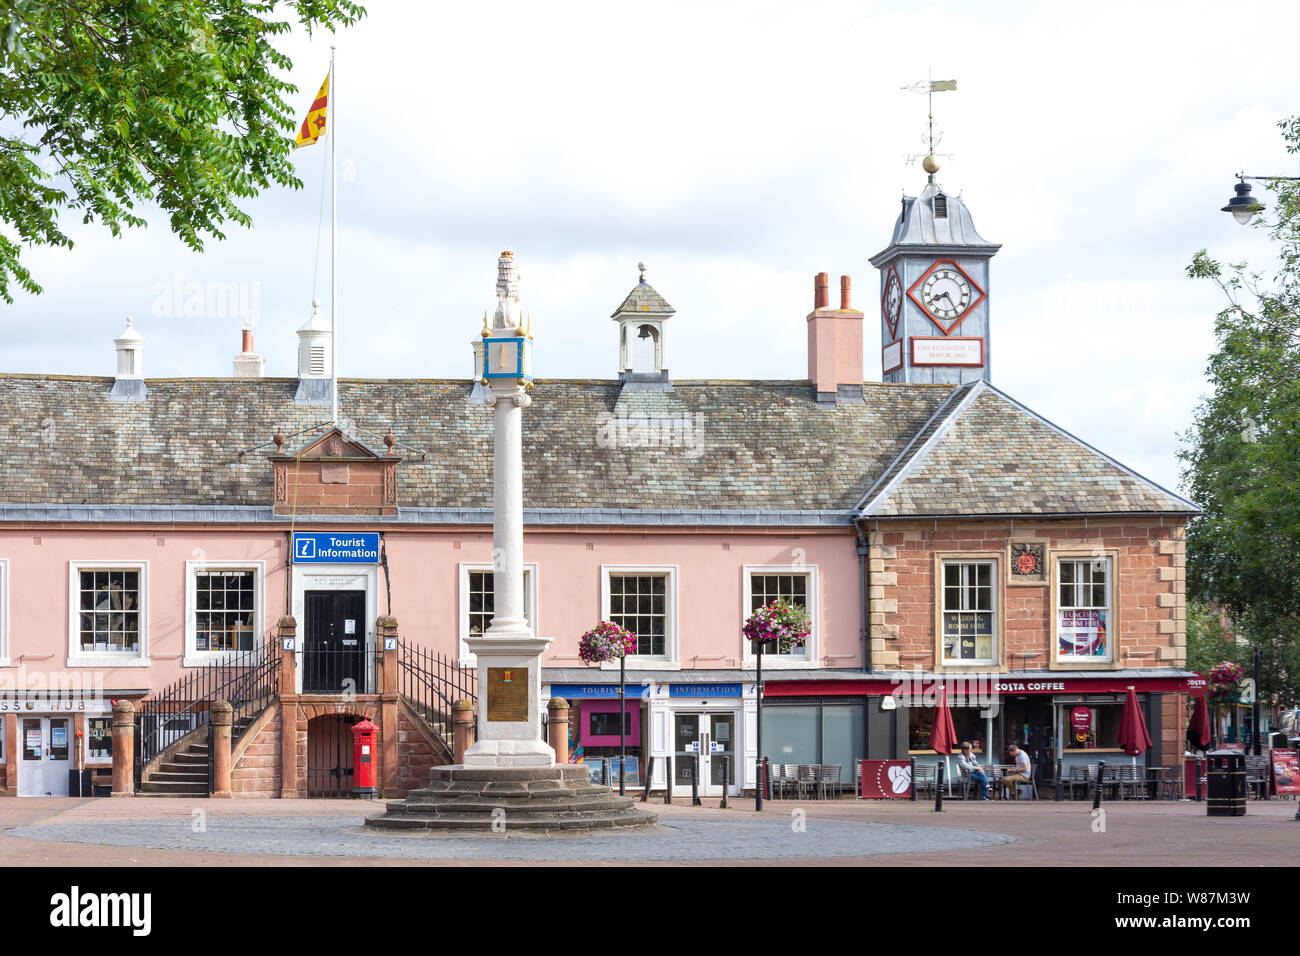 Croix du marché Monument et ancien hôtel de ville, la croix du marché, Carlisle, Ville de Carlisle, Cumbria, Angleterre, Royaume-Uni Banque D'Images